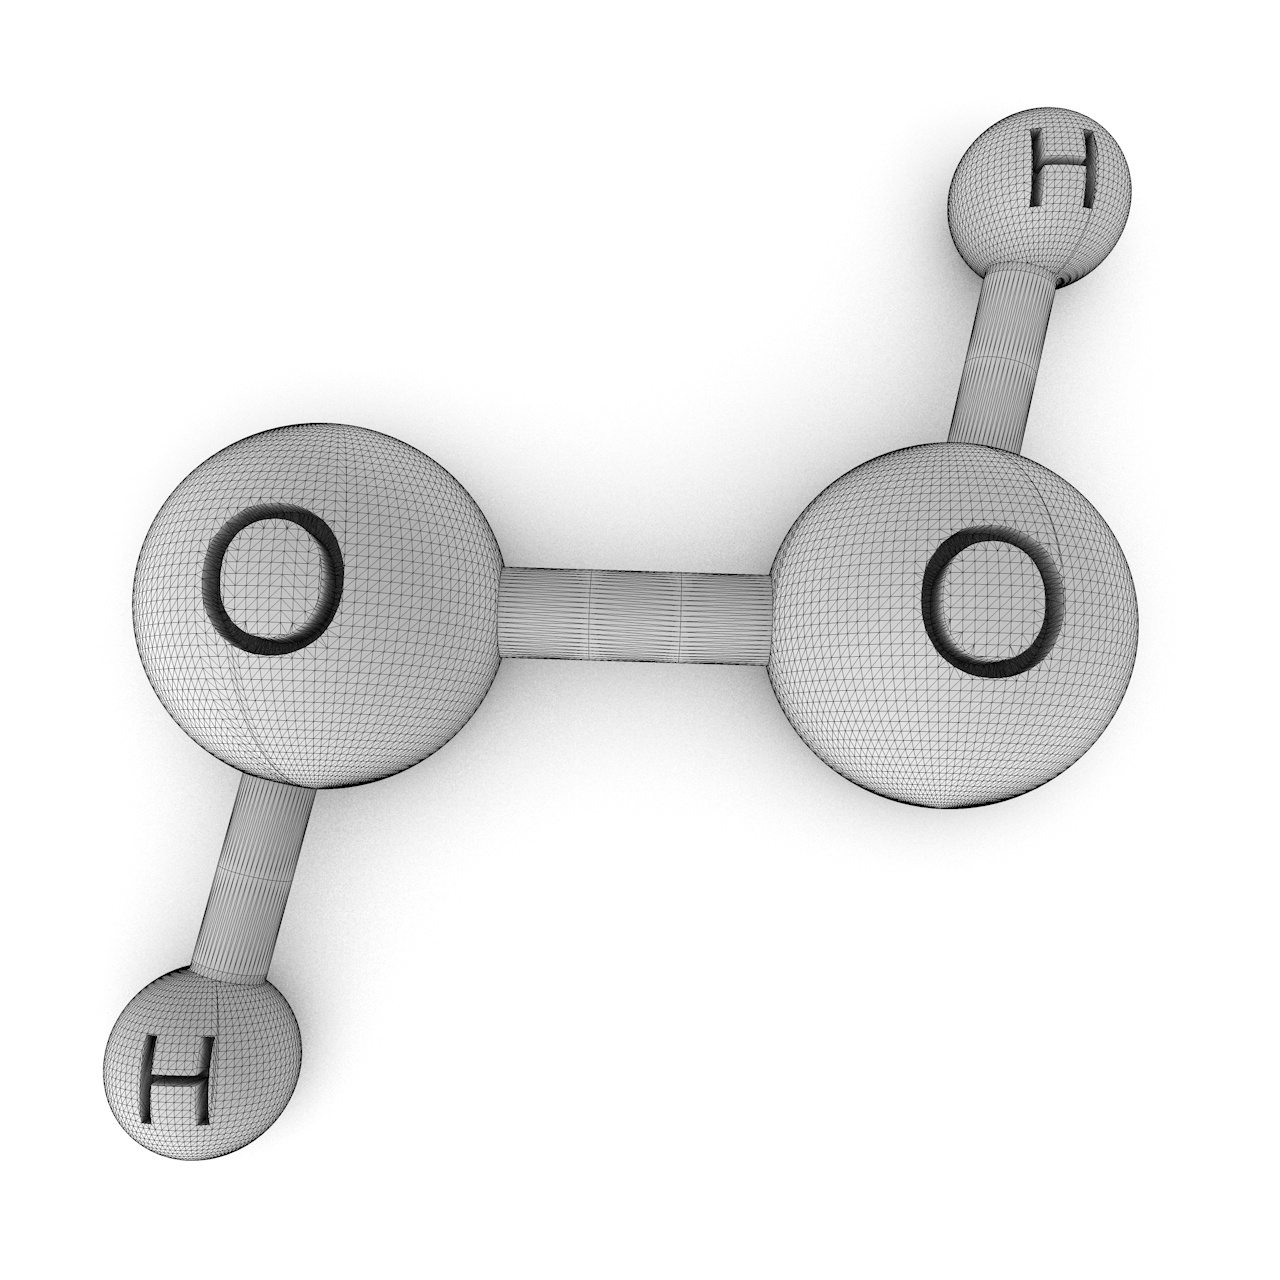 مدل چاپ سه بعدی مولکول H2O2